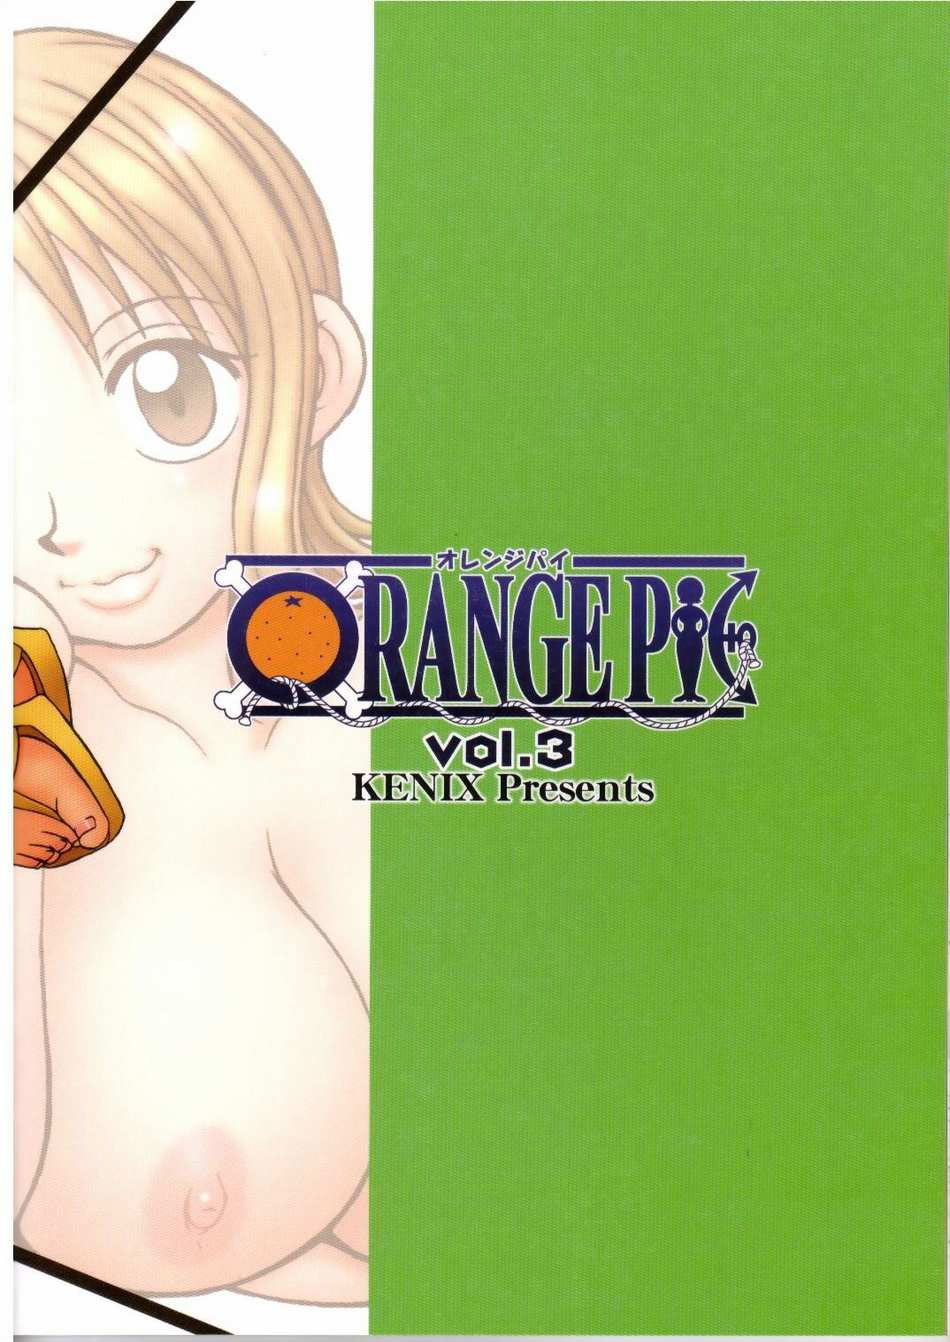 ORANGE PIE Vol.3 one piece 27 hentai manga